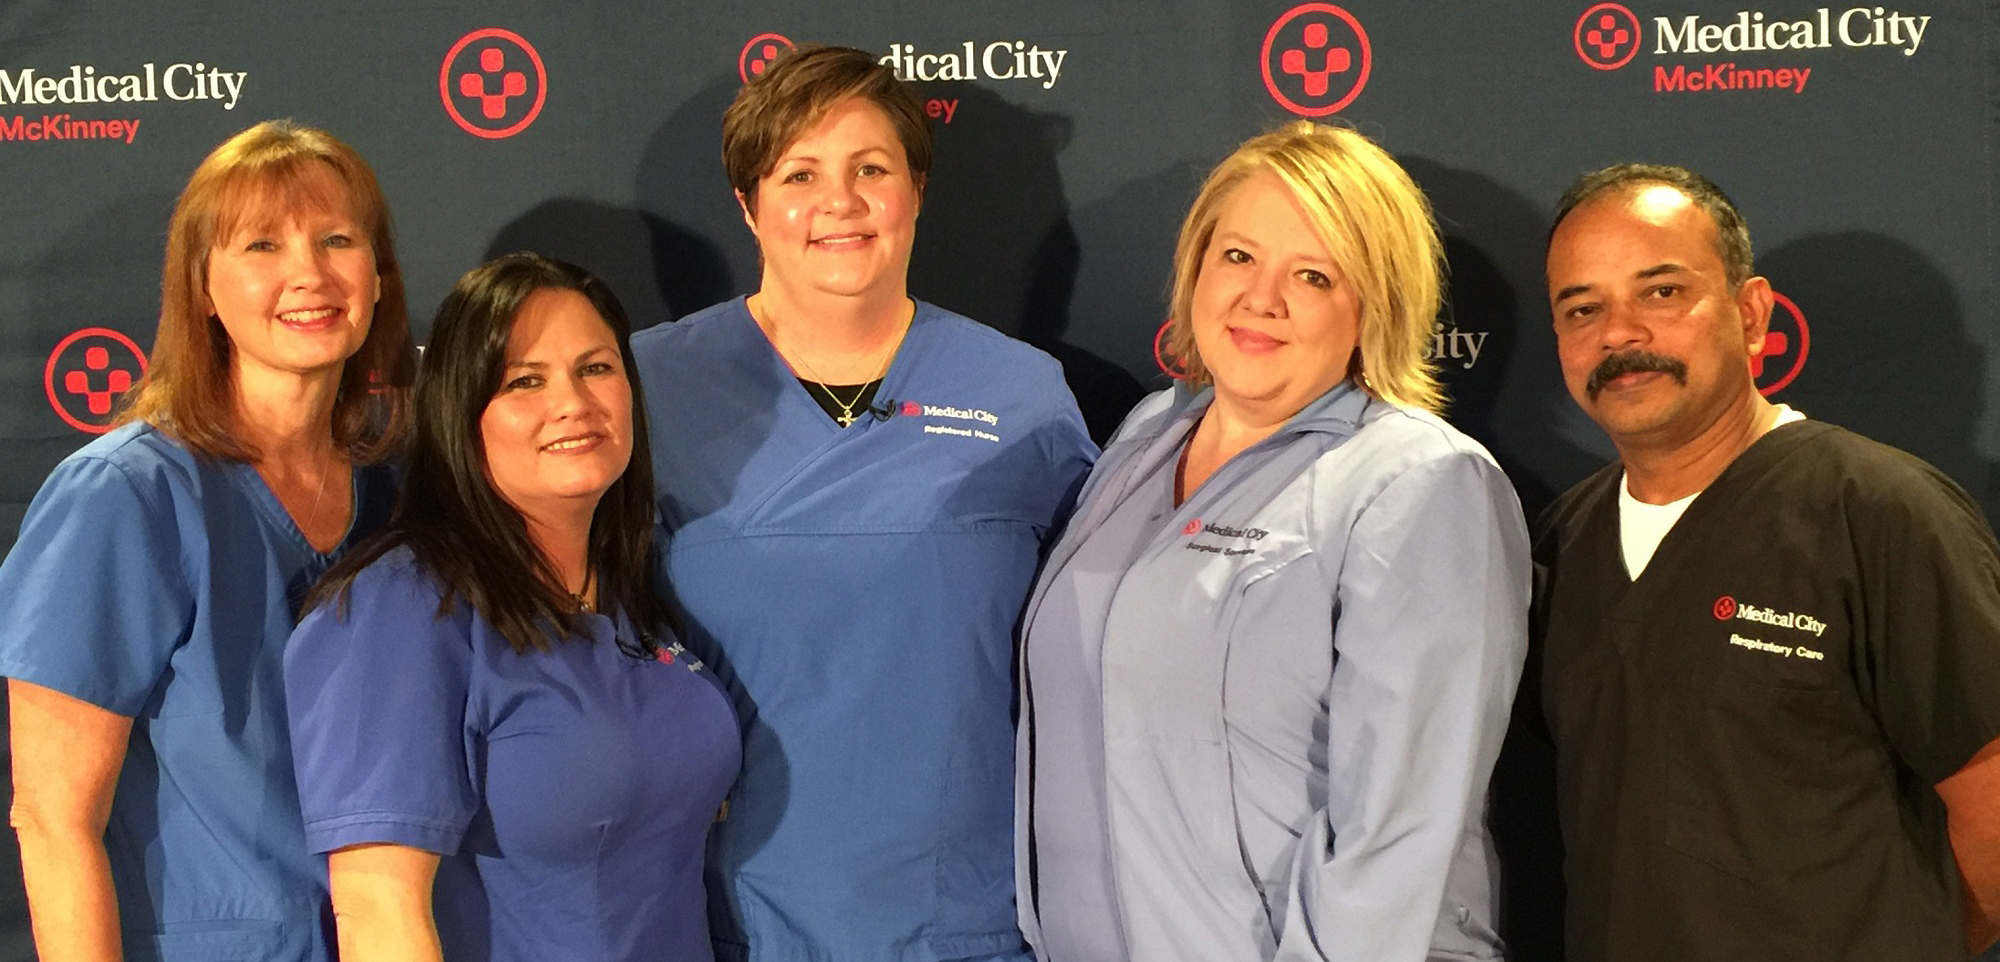 Five hospital caregivers in scrubs